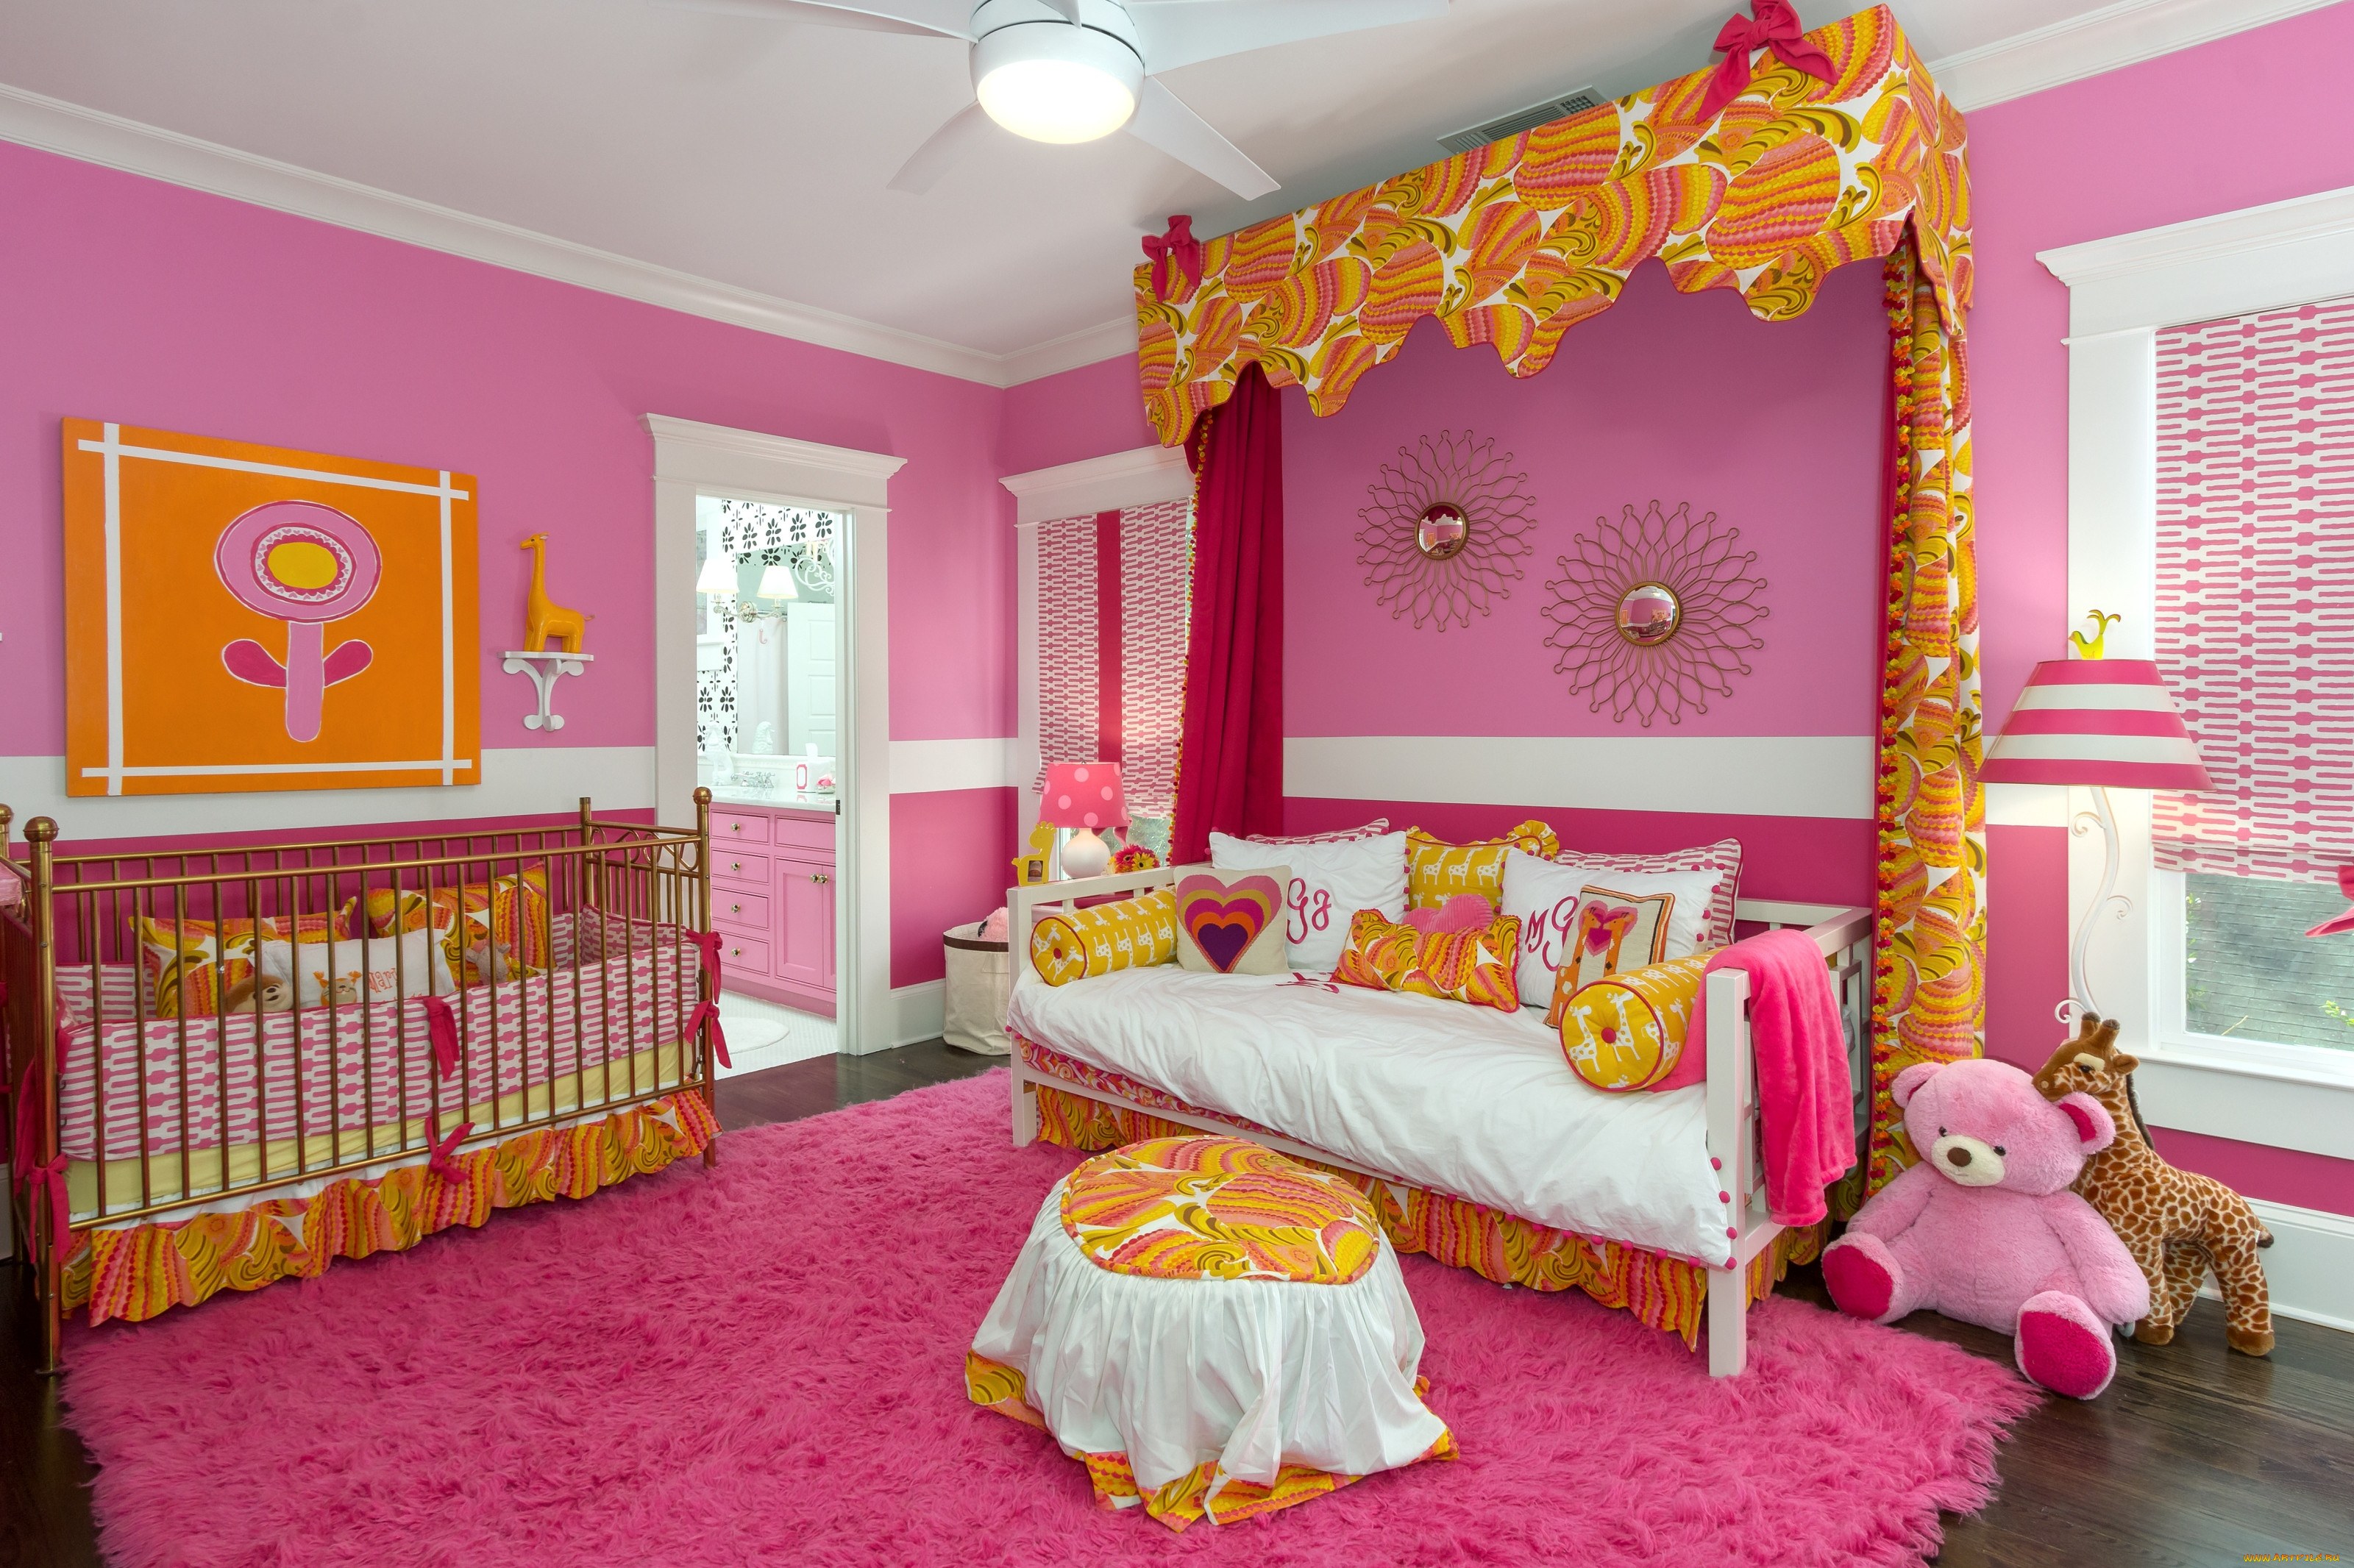 Желто розовый дизайн. Красивые детские комнаты. Детские комнаты для девочек. Интерьер детской комнаты девочке. Комната для девочки розового цвета.